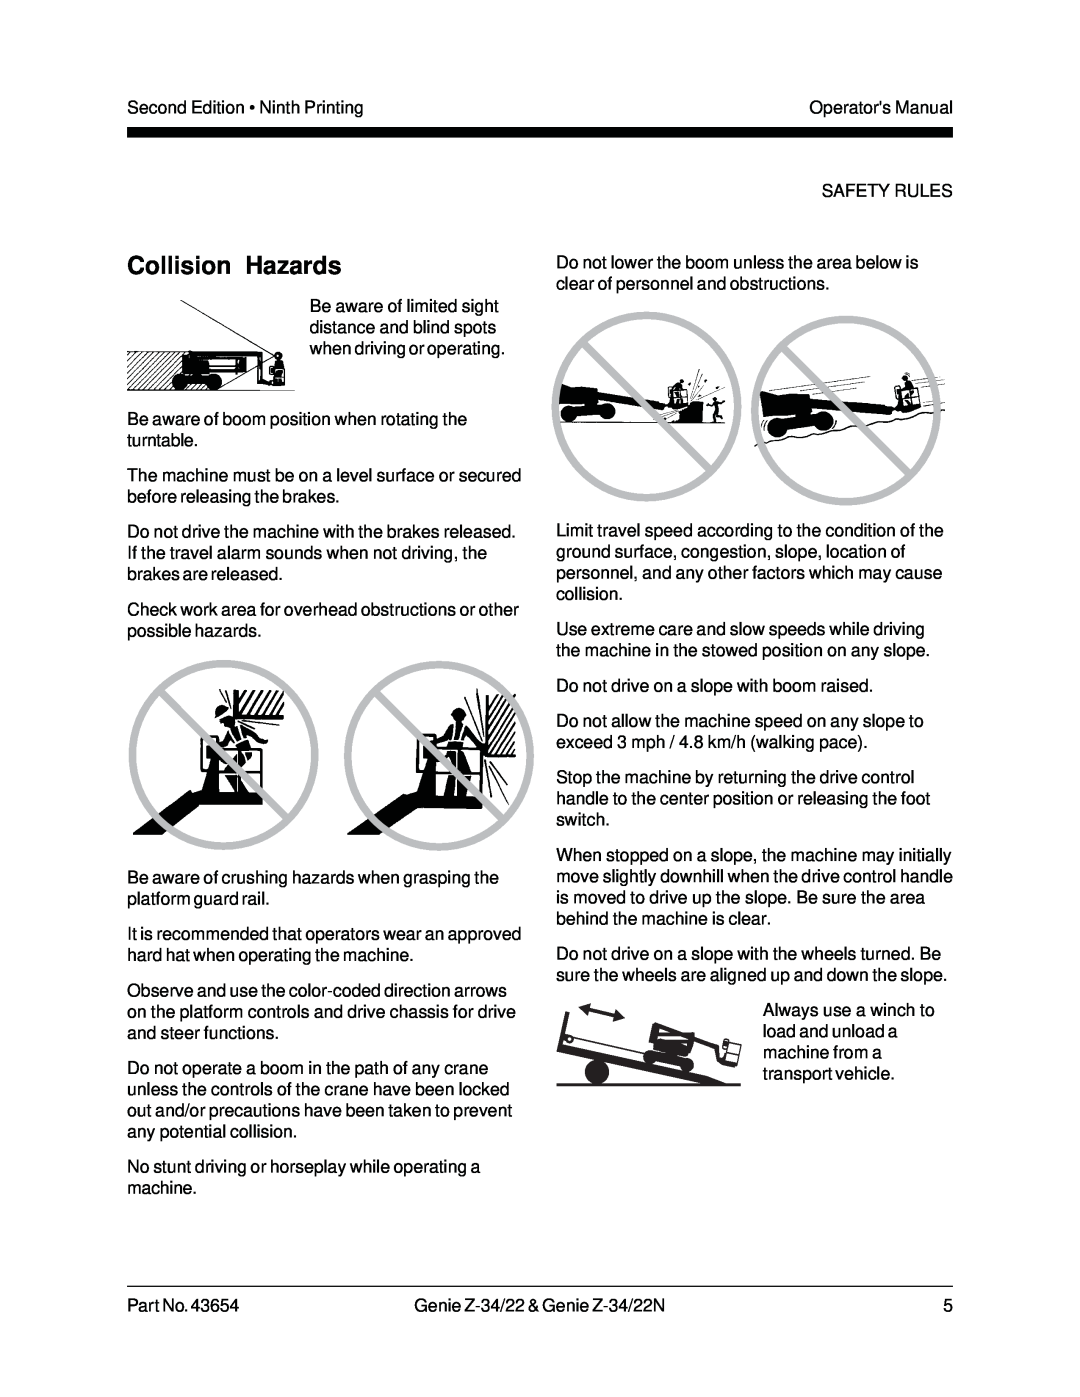 Genie Z-34, Z-22N manual Collision Hazards 